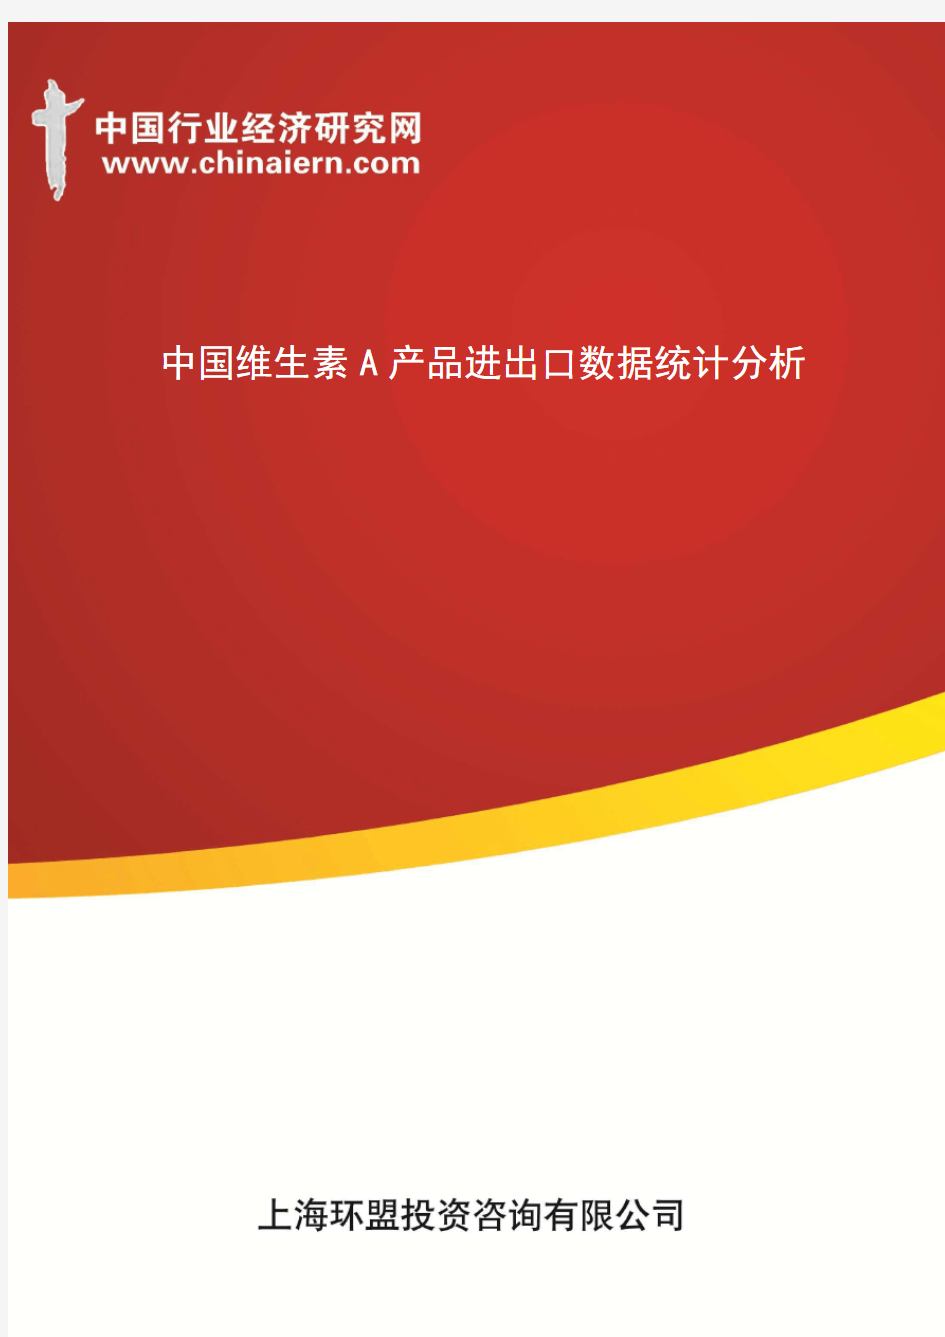 中国维生素A产品进出口数据统计分析(上海环盟)